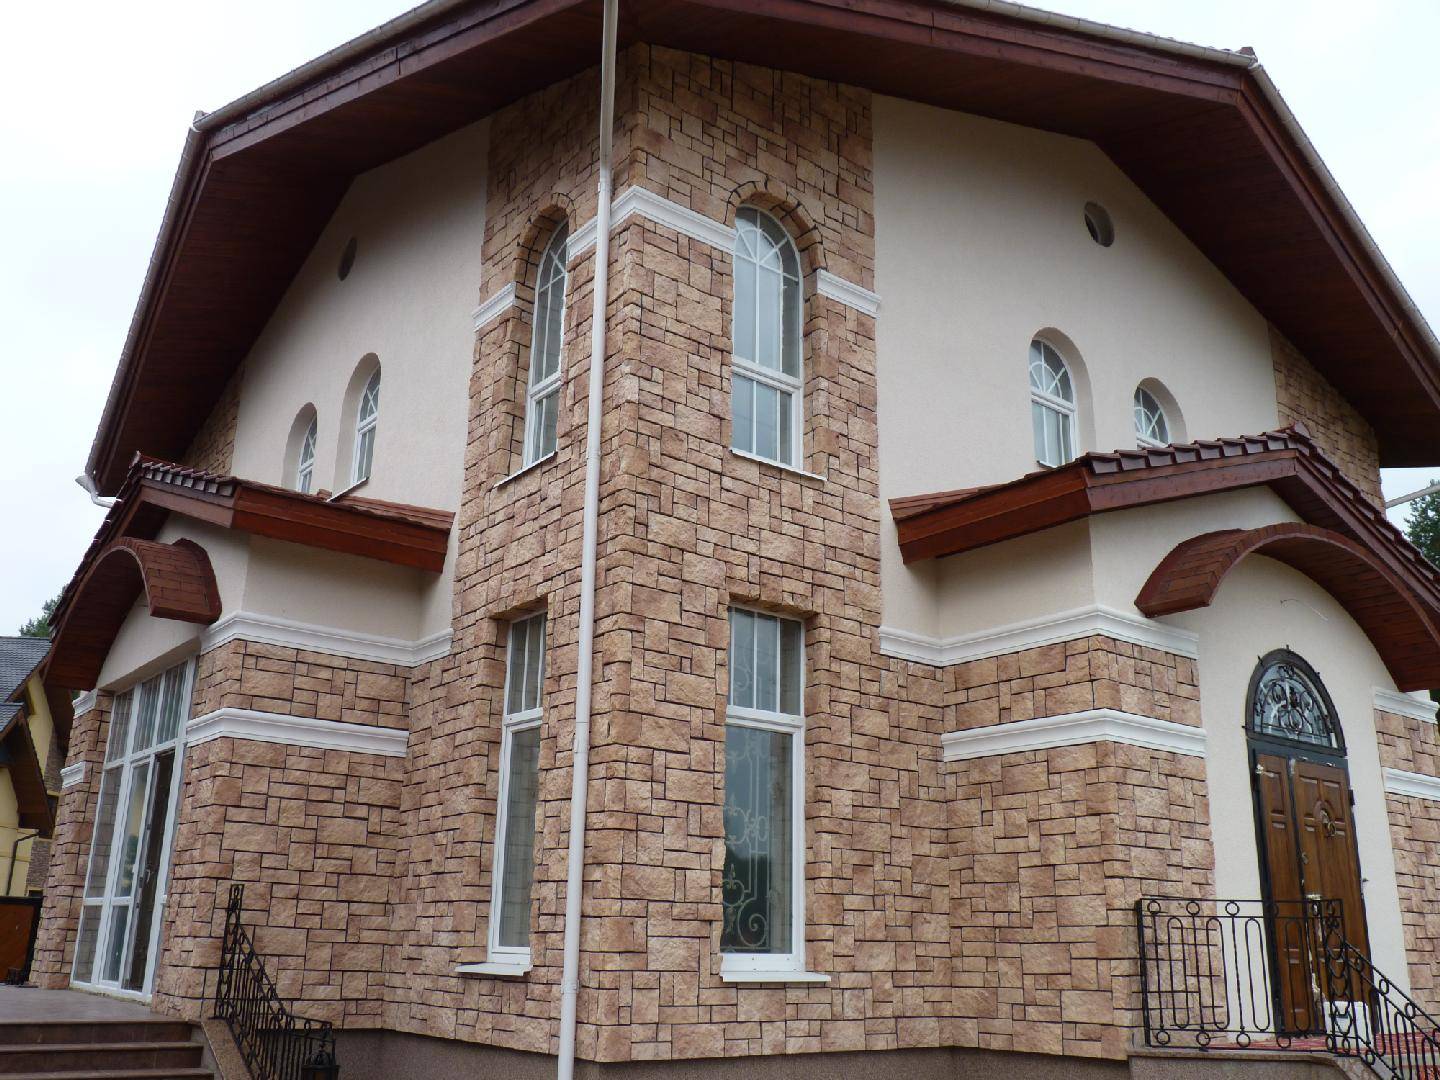 Популярные виды фасадных панелей: ю пласт, доломит, террактовый wandstein и облицовка с мраморной крошкой